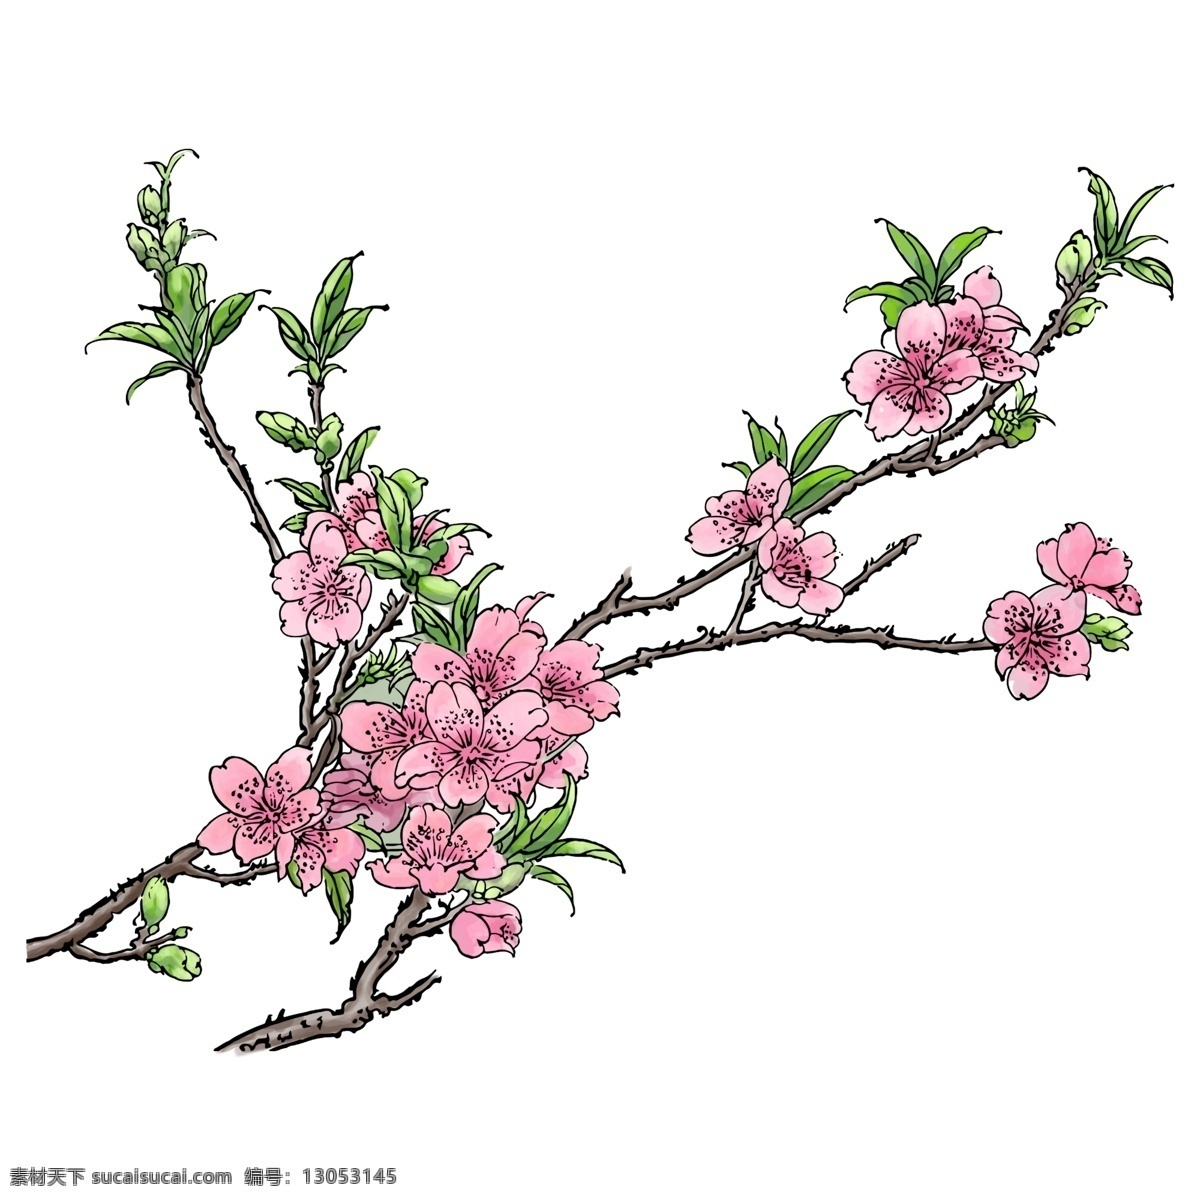 春天 粉色 手绘 水彩 风格 桃花 树枝 元素 桃树 叶子 绿叶 写实桃花 手绘风格 手绘桃花 水彩风格 粉色桃花 花